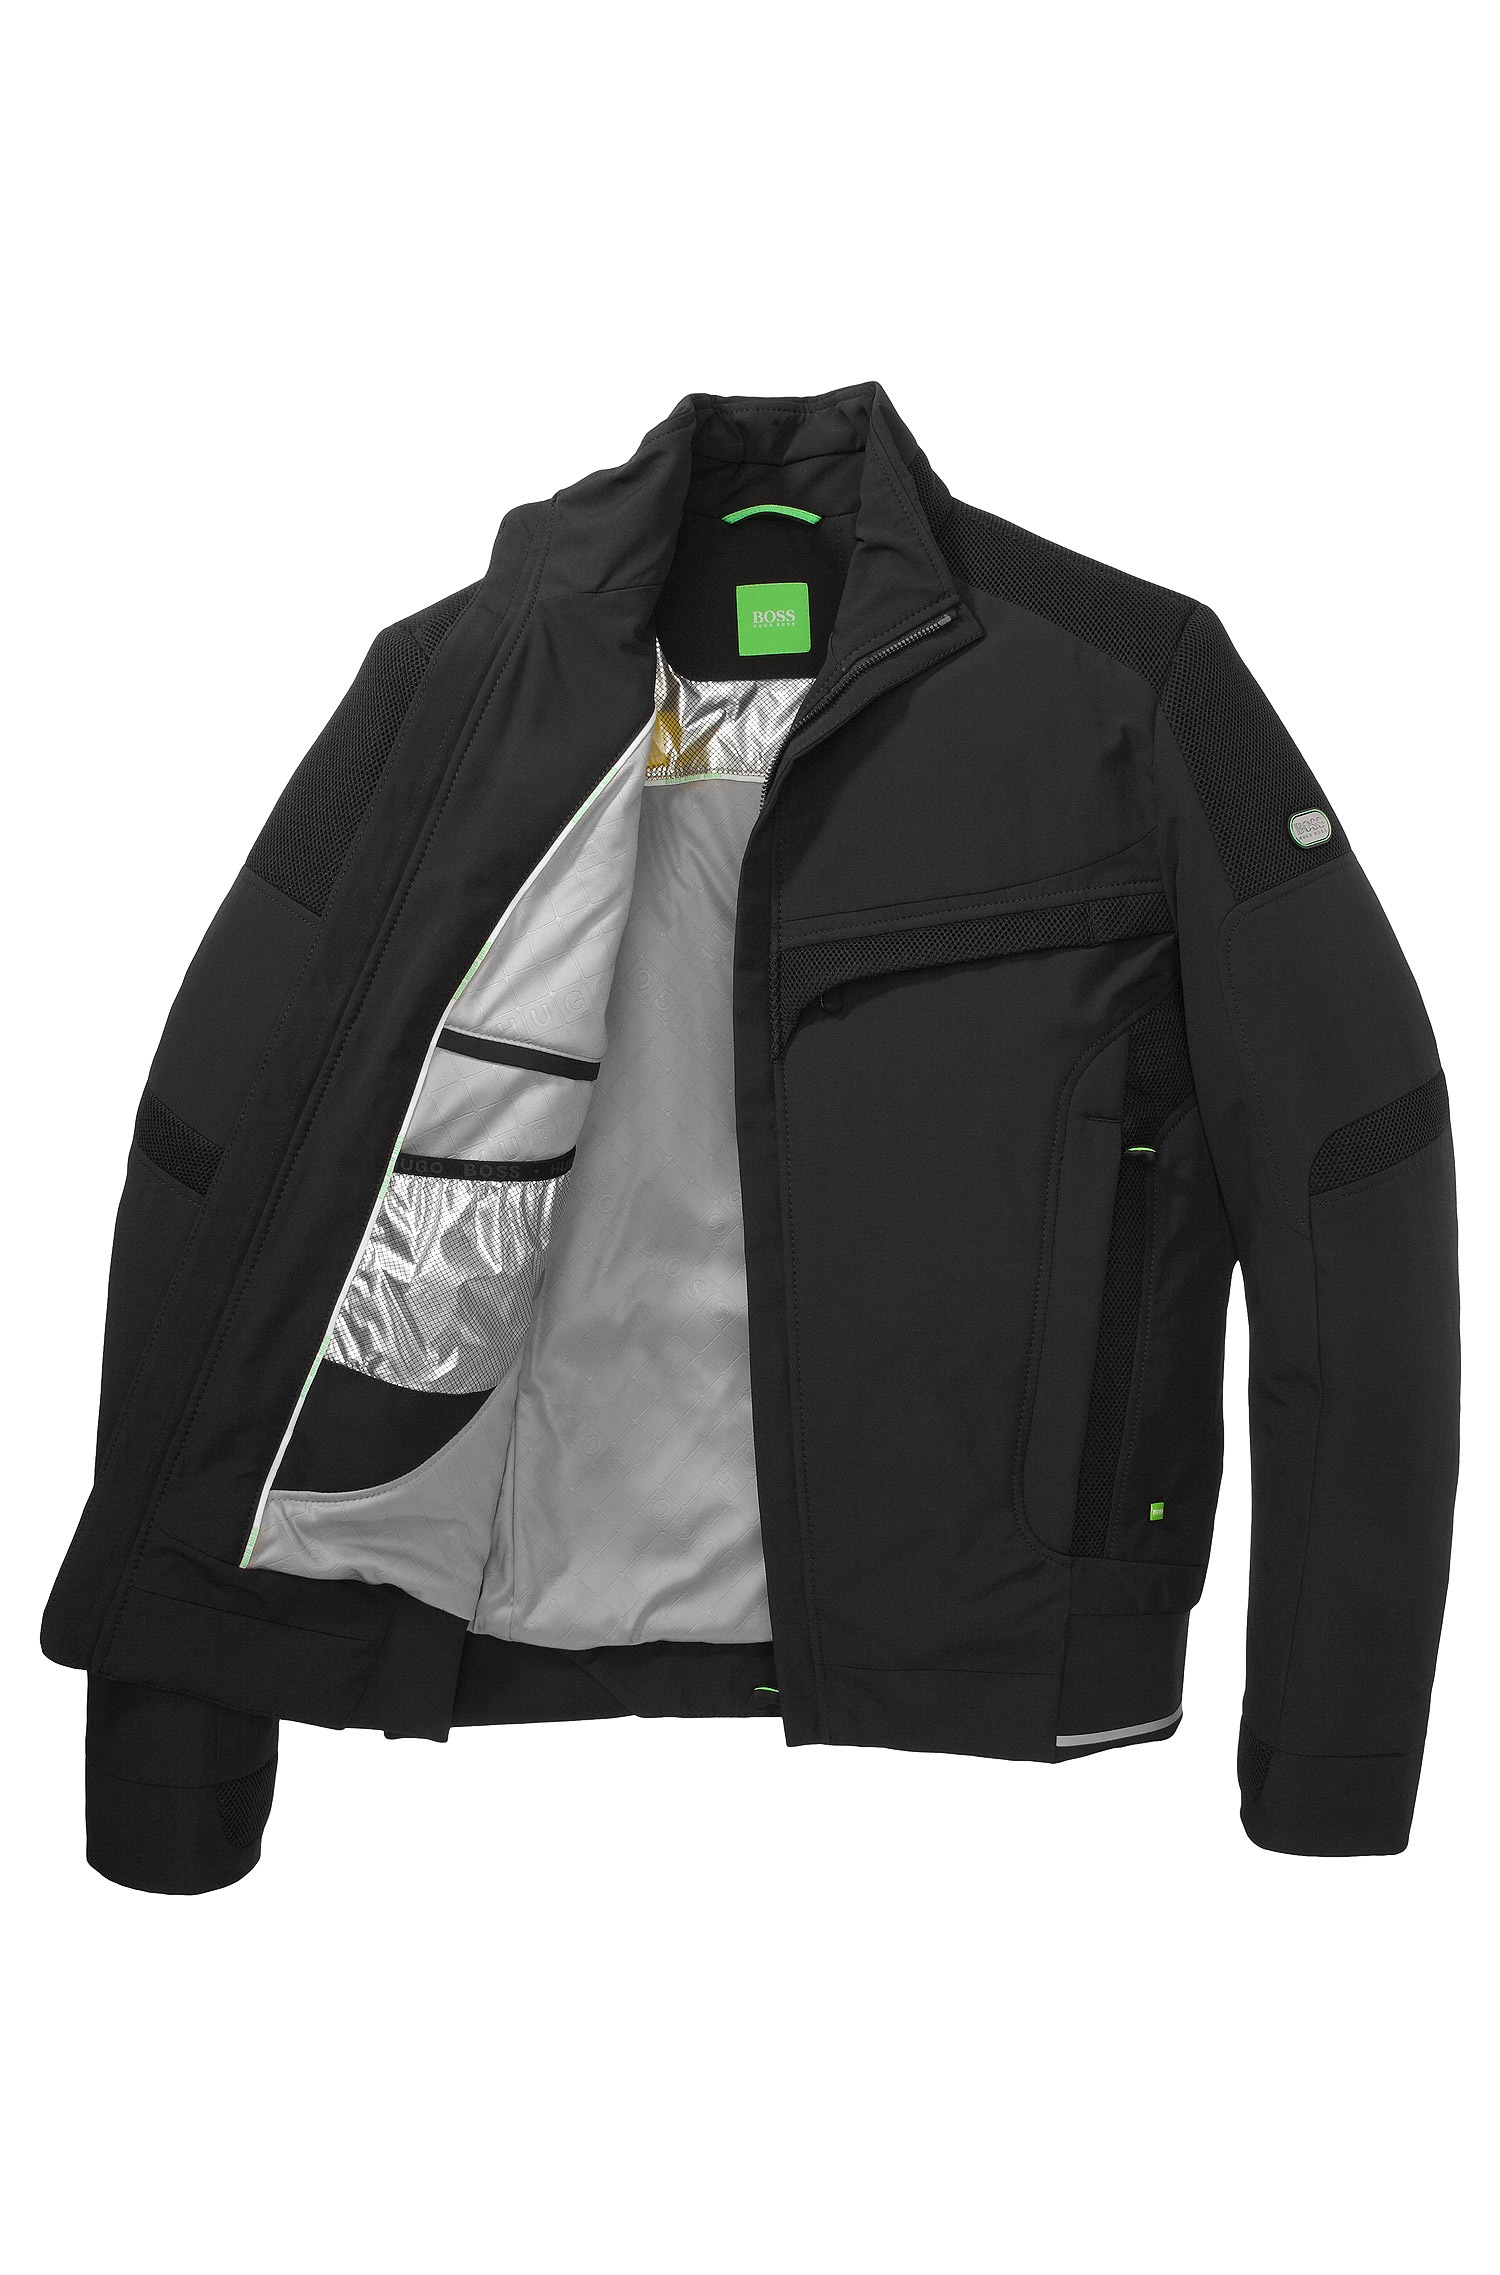 BOSS Green Synthetic Windbreaker 'Jorryn 3' In Windproof Material in Black  for Men - Lyst